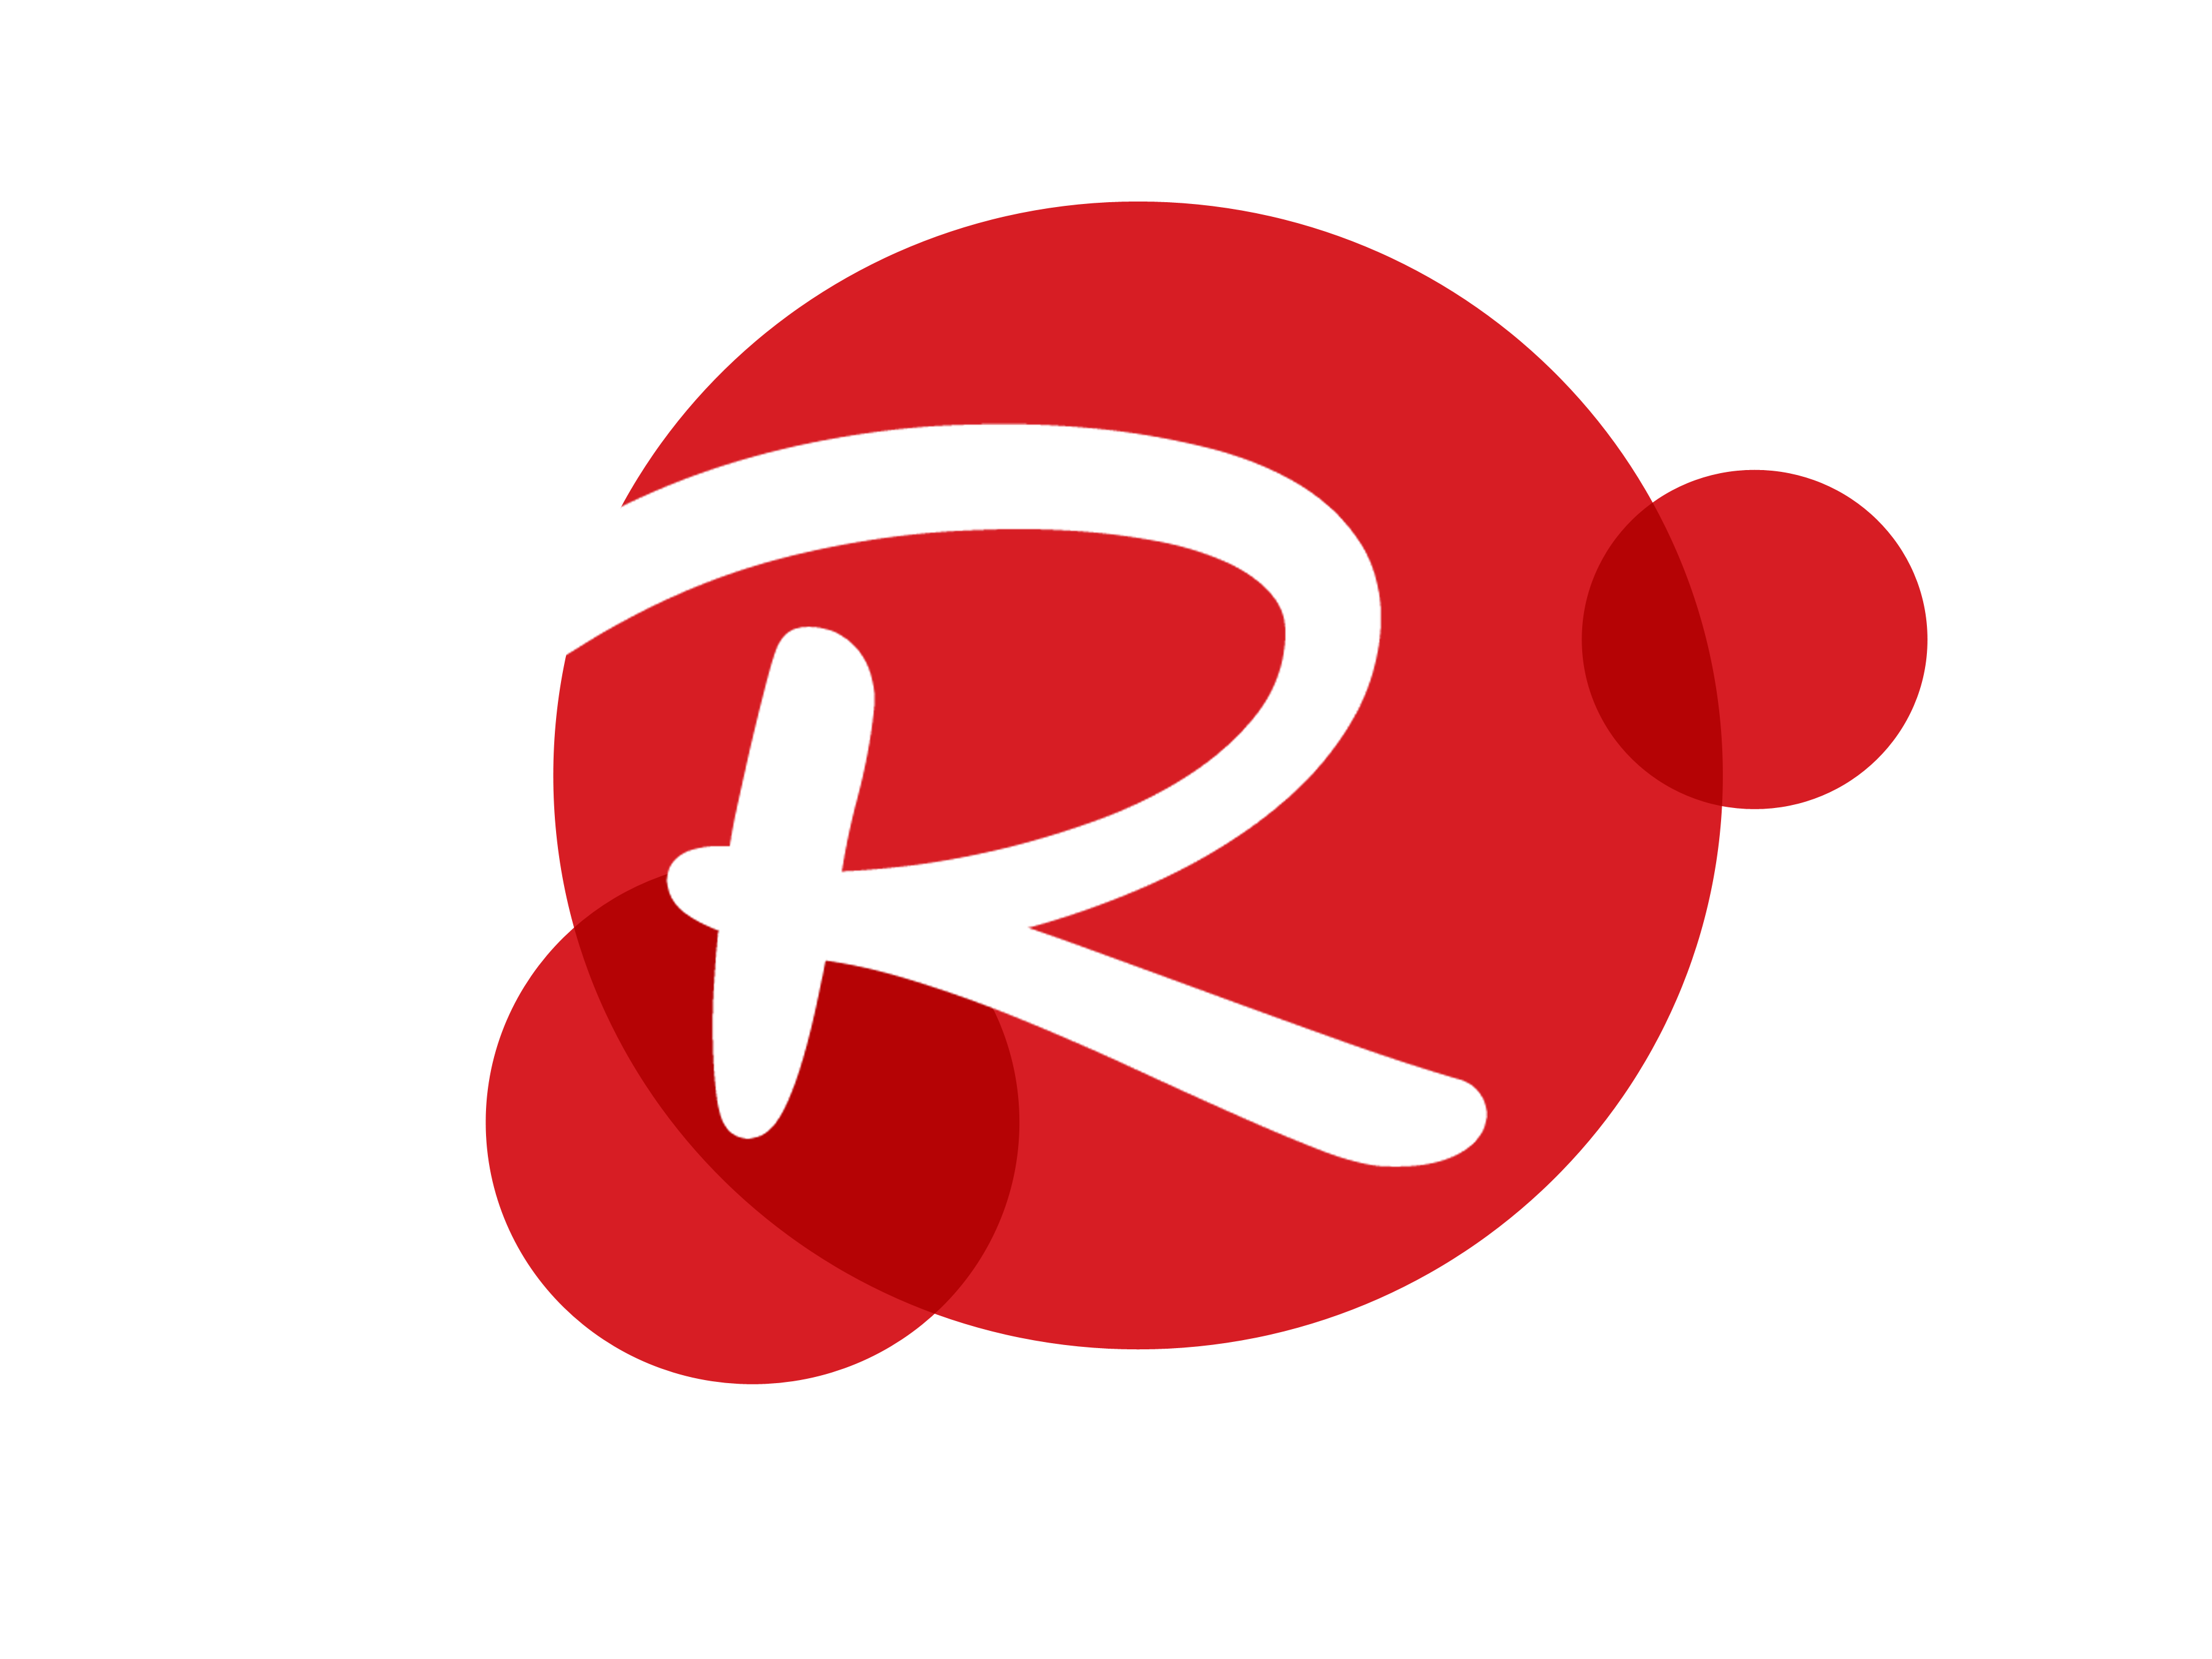 R Logo | About of logos